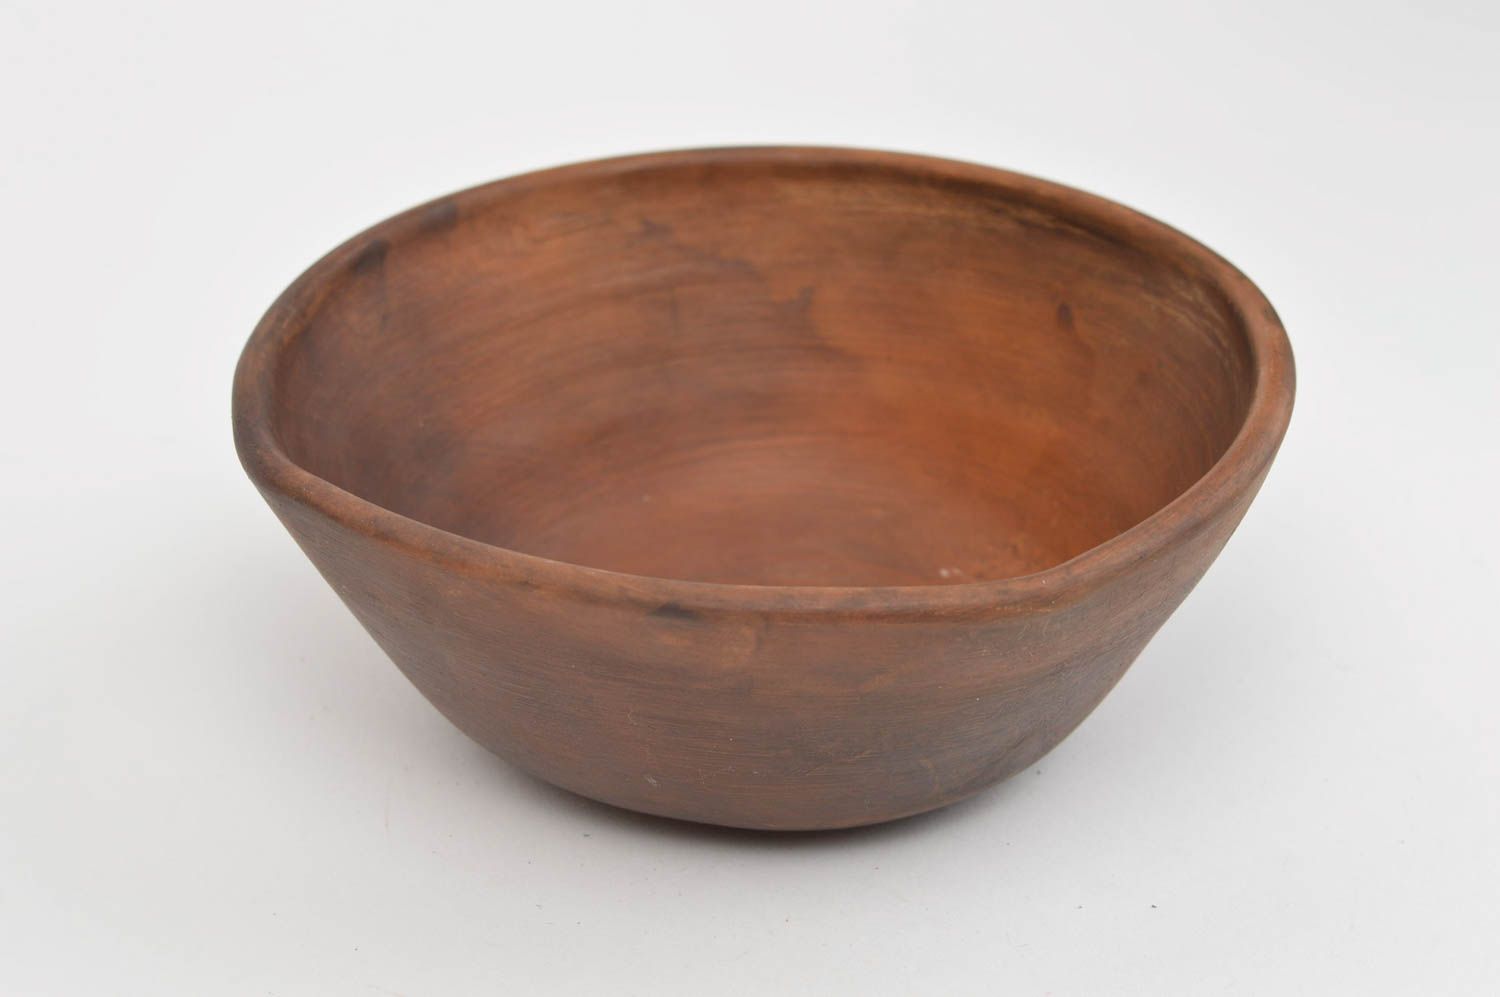 Простая миска из глины коричневого цвета посуда ручной работы для подачи блюд фото 4